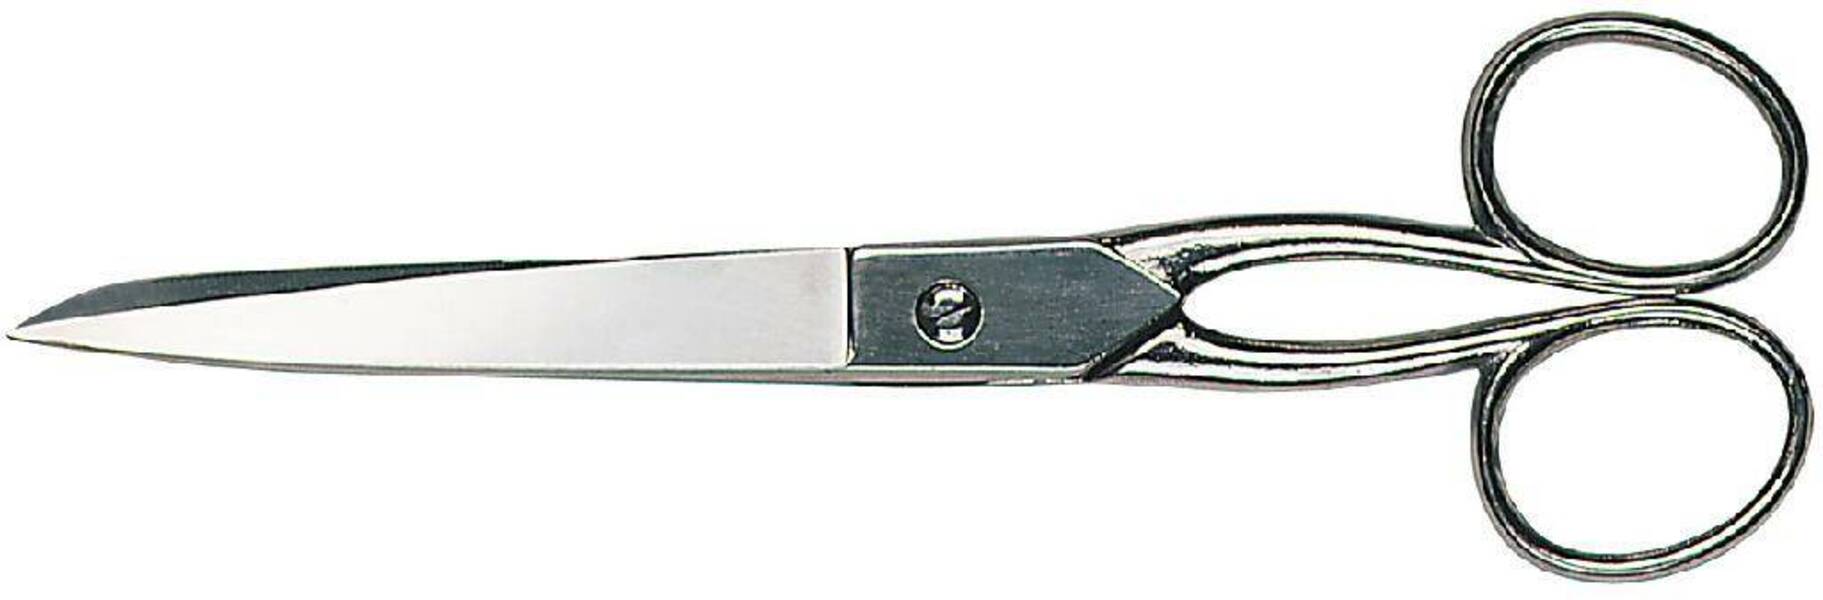 D840-180 Ножницы бытовые и швейные, 180 мм, полностью никелированные